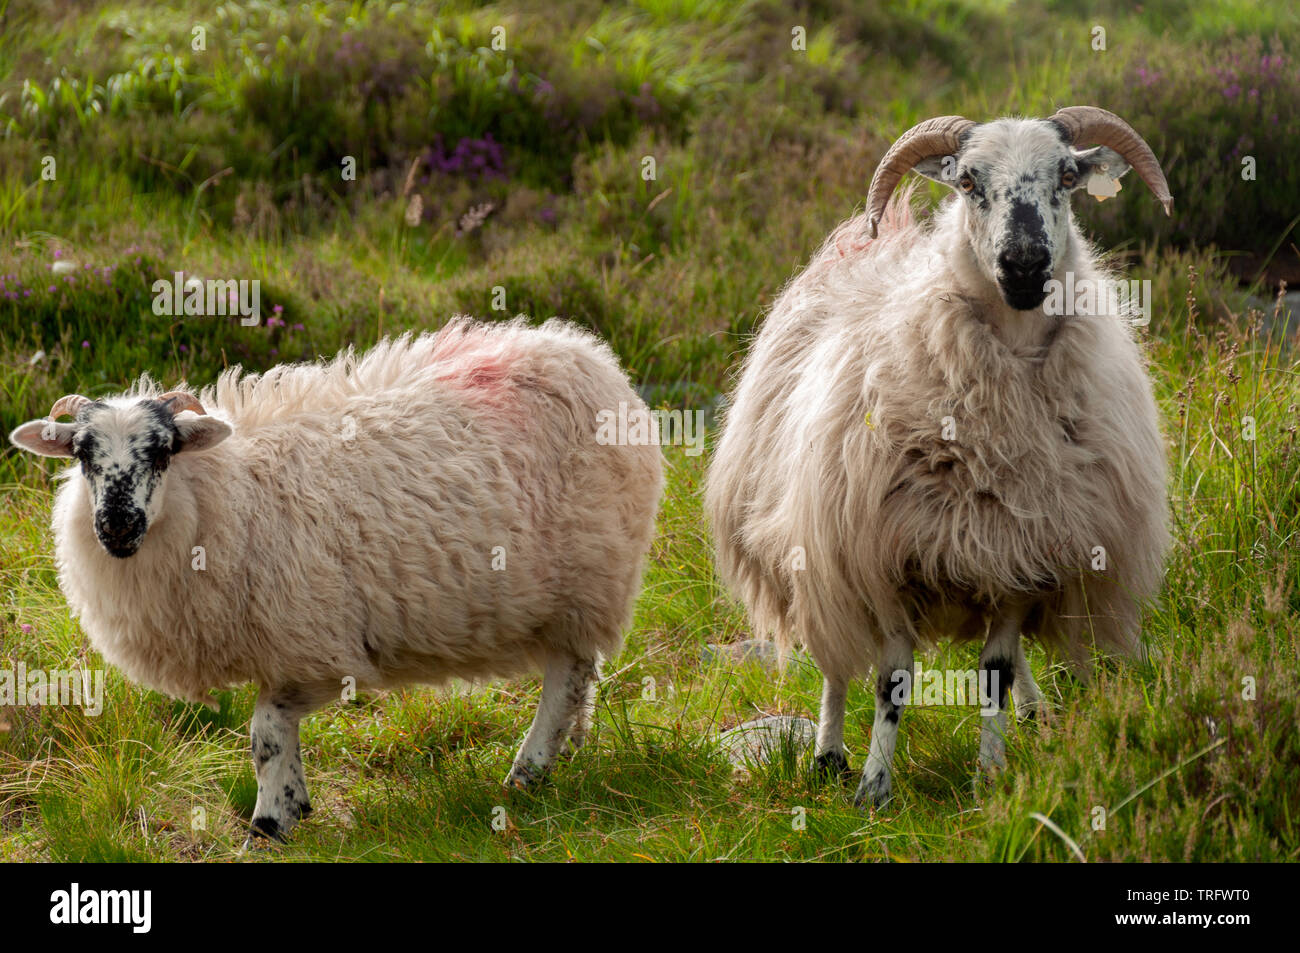 Brebis Irlande deux brebis irlandais à face noire avec une longue laine polaire paître sur une prairie verte luxuriante. Banque D'Images